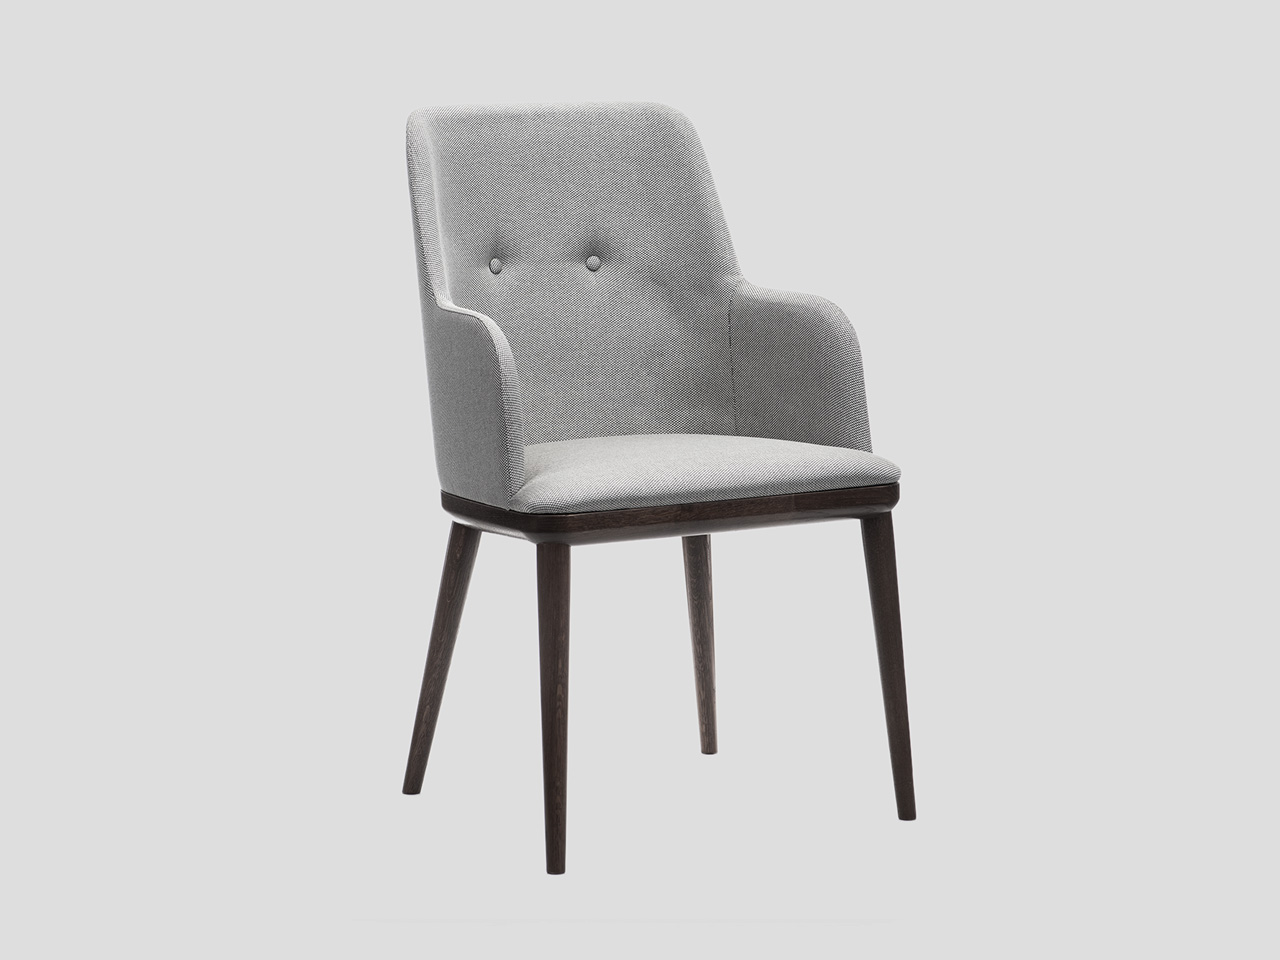 Moderna trpezarijska stolica sa rukonaslonima i tapaciranim sedistem i